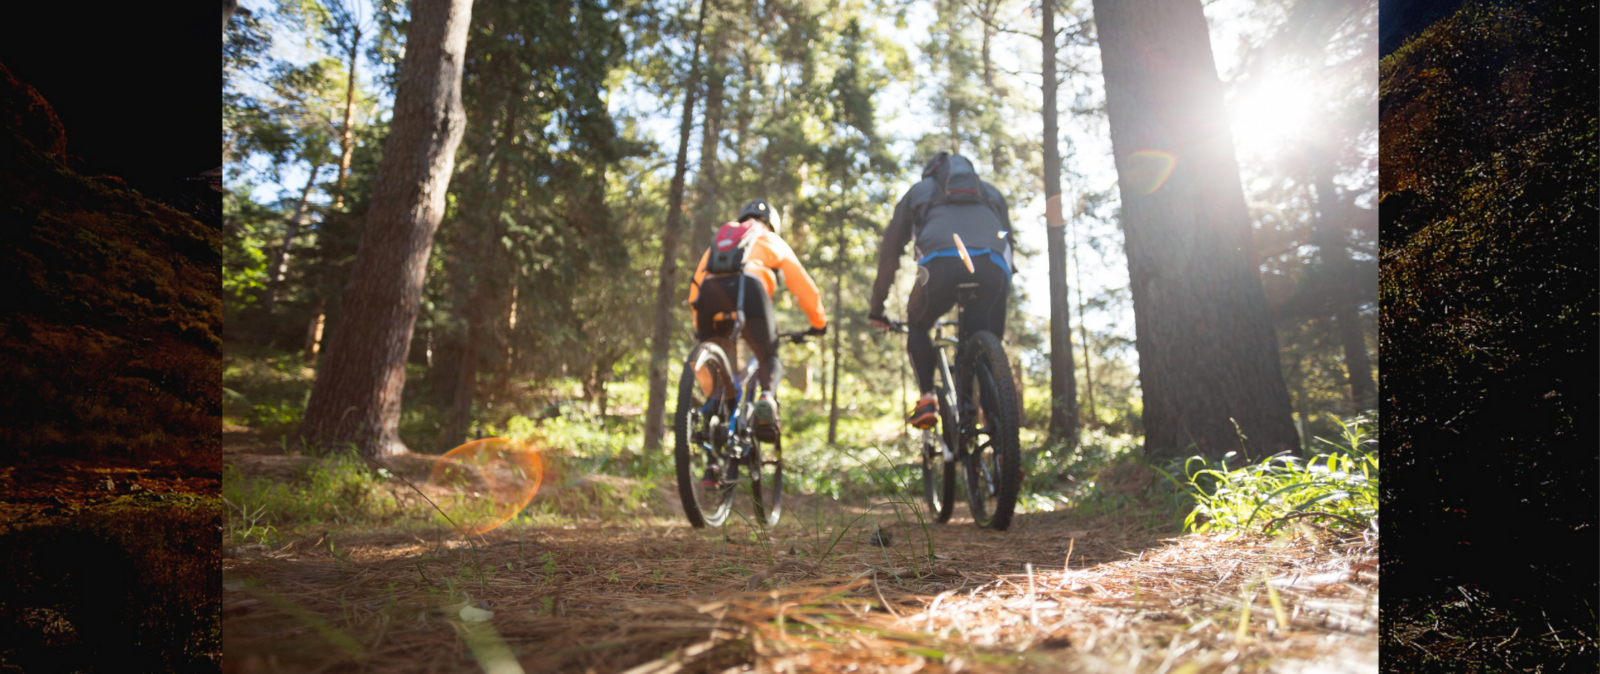 Mit Ihrem Tourguide geht es aktiv und sportlich mit dem E-Bike in die sächsischen Berge. Mit unserer E-Bike Tour im Erzgebirge wecken wir Ihr Entdeckerherz. Material und Route sind dabei sorgfältig gewählt.